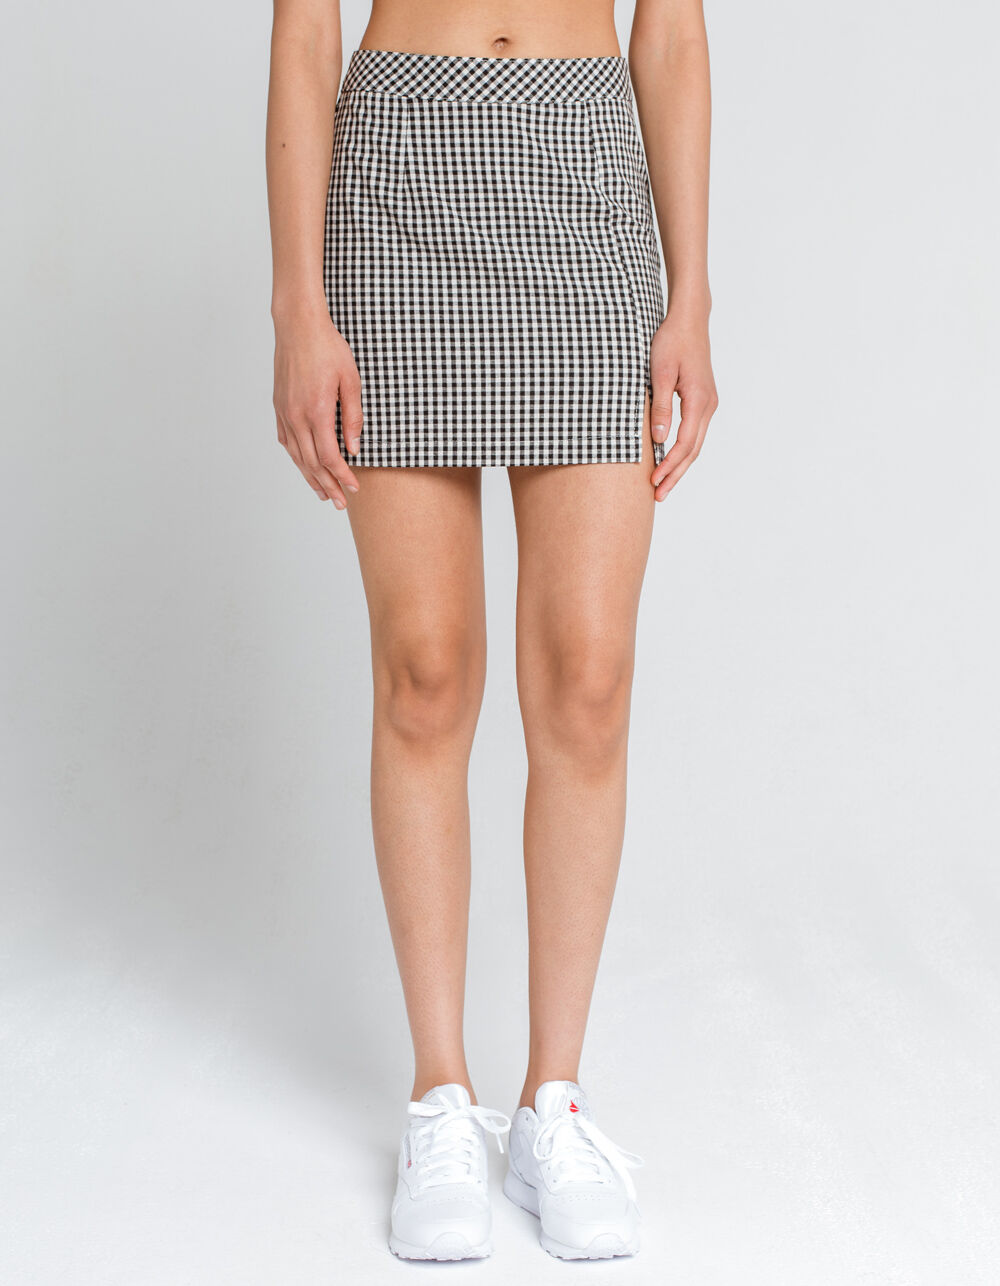 IVY & MAIN Gingham Mini Skirt - BLK/WHT | Tillys